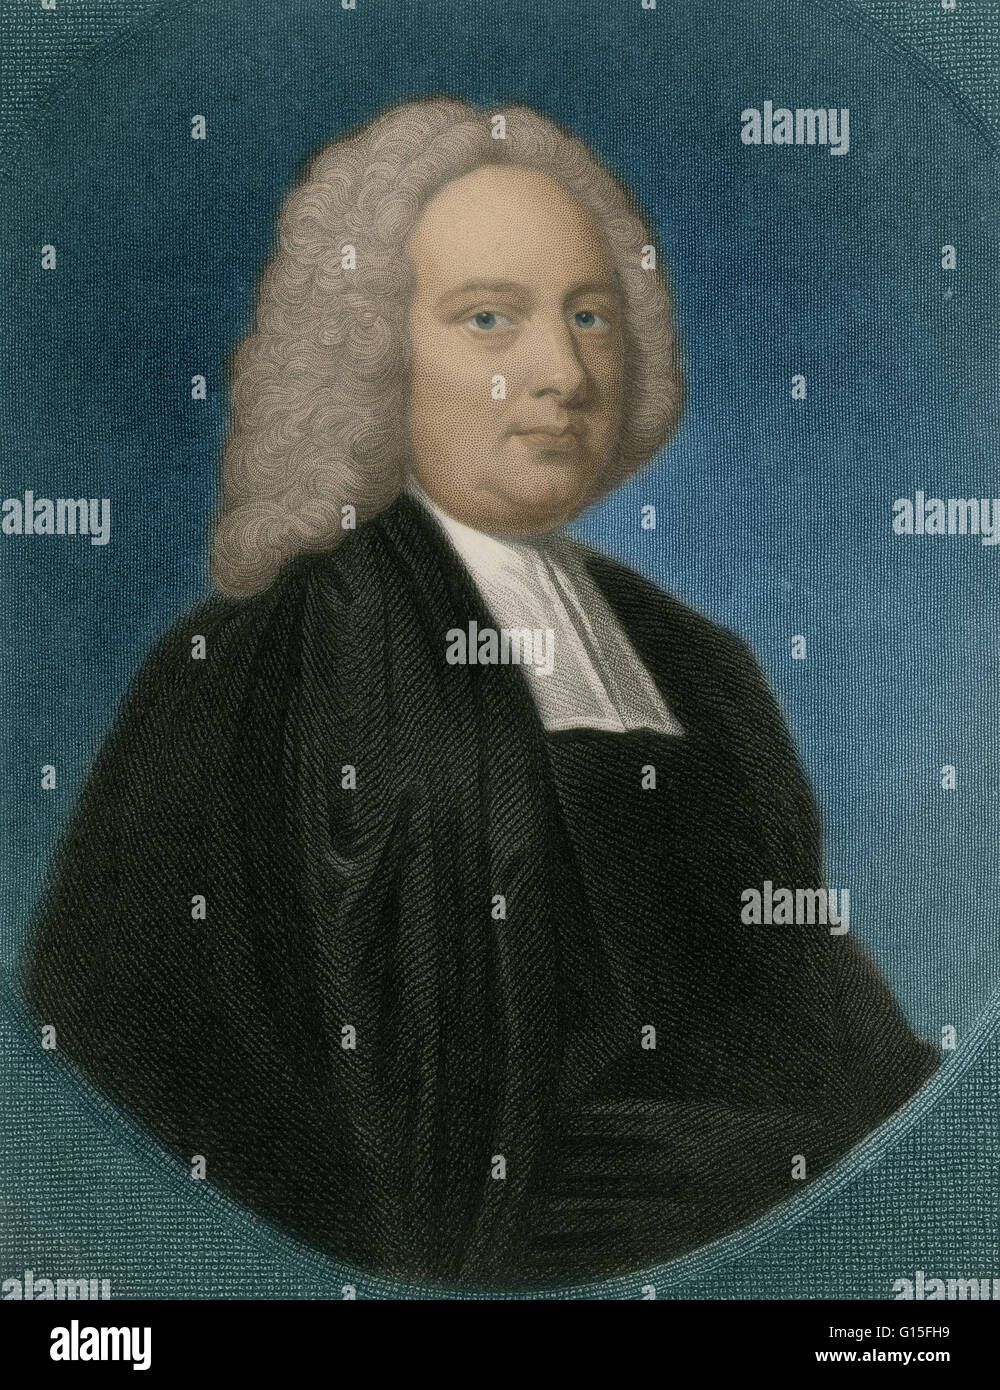 James Bradley (1693-1762), astronomo inglese Royal. Bradley è ricordato soprattutto per il suo lavoro sulla parallasse stellare e la velocità della luce. Parallasse stellare è il leggero spostamento della posizione apparente delle stelle che è osservata quando la terra è in oppos Foto Stock